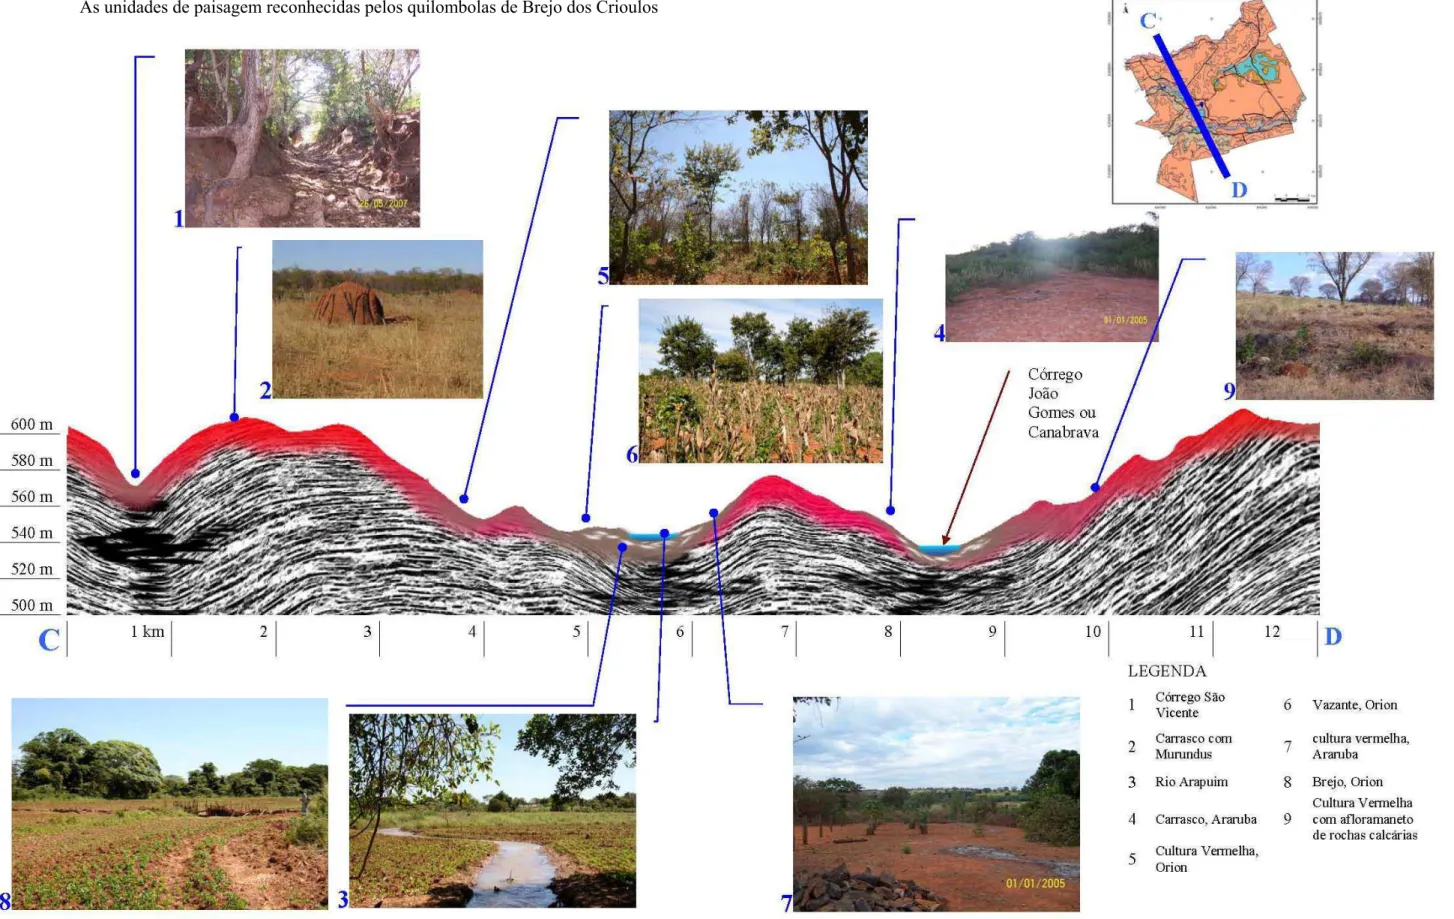 Figura 4. Transecto transversal do território de Brejo dos Crioulos com a identificação e ilustração das paisagens reconhecidas pelos quilombolas